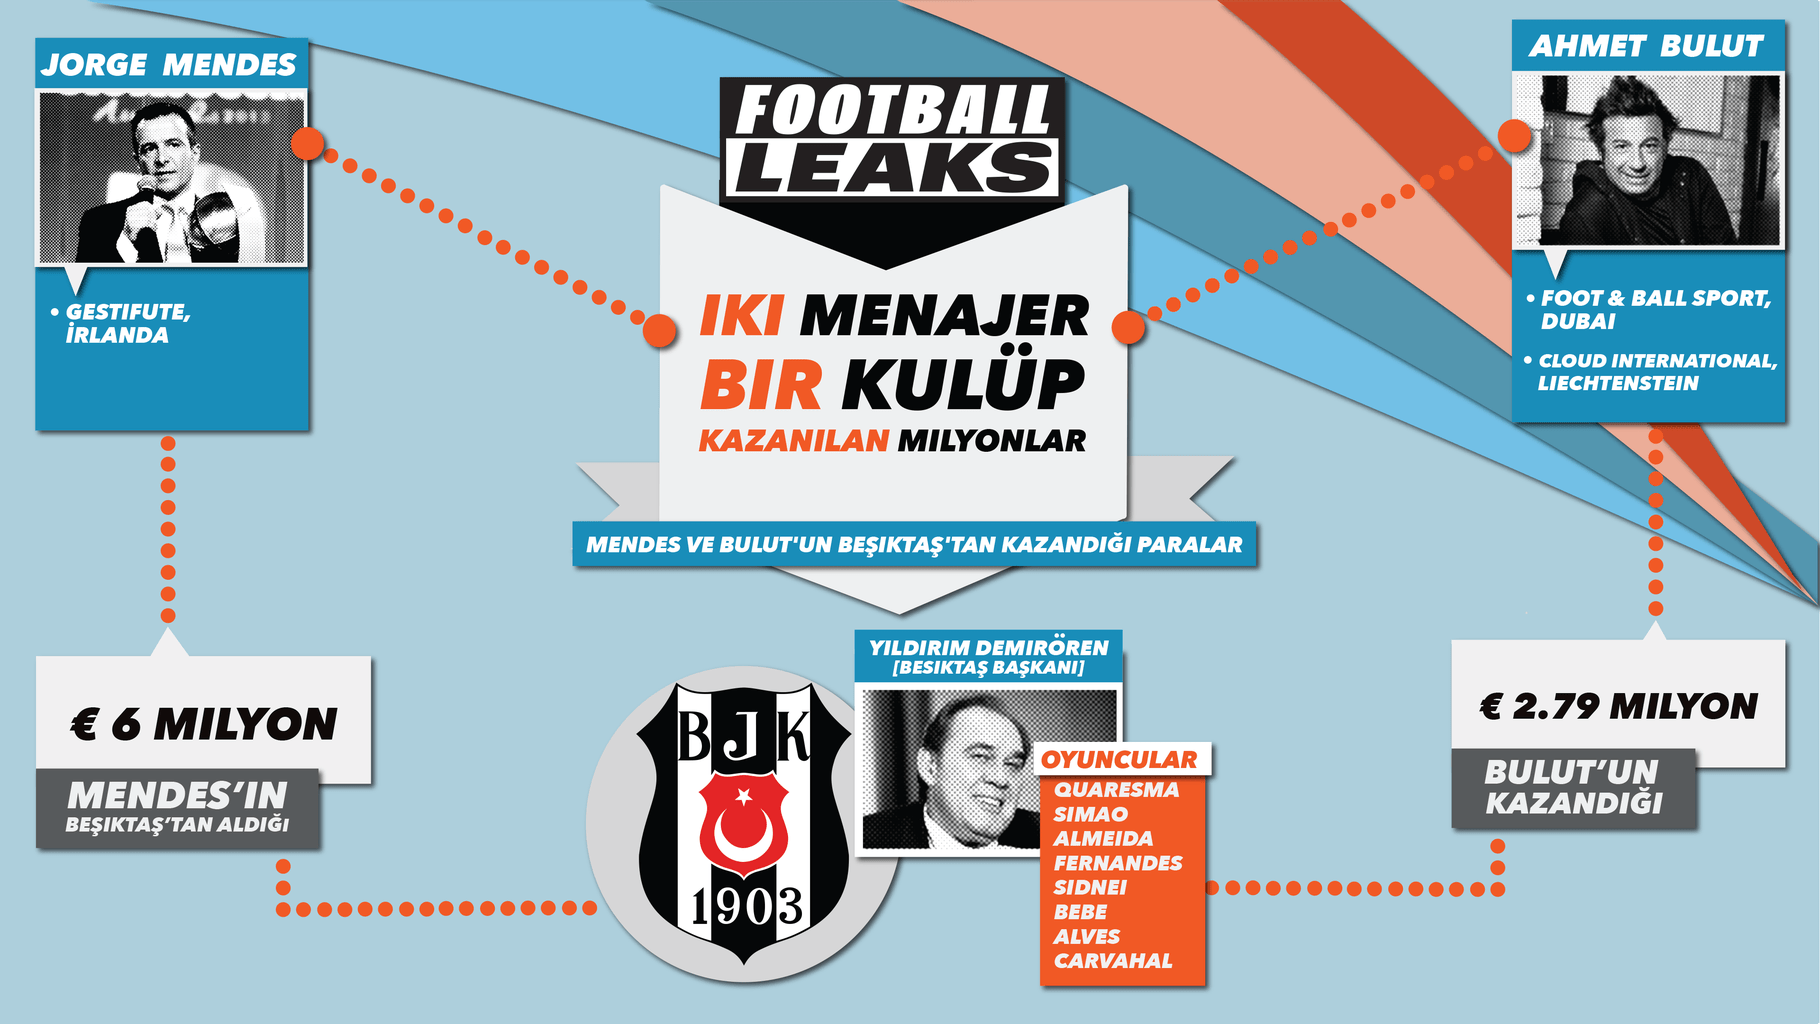 NationalTurk 7 yıl önce yazmıştı! Jorge Mendes ve Ahmet Bulut’un Beşiktaş belgeleri Football Leaks’te yayınlandı